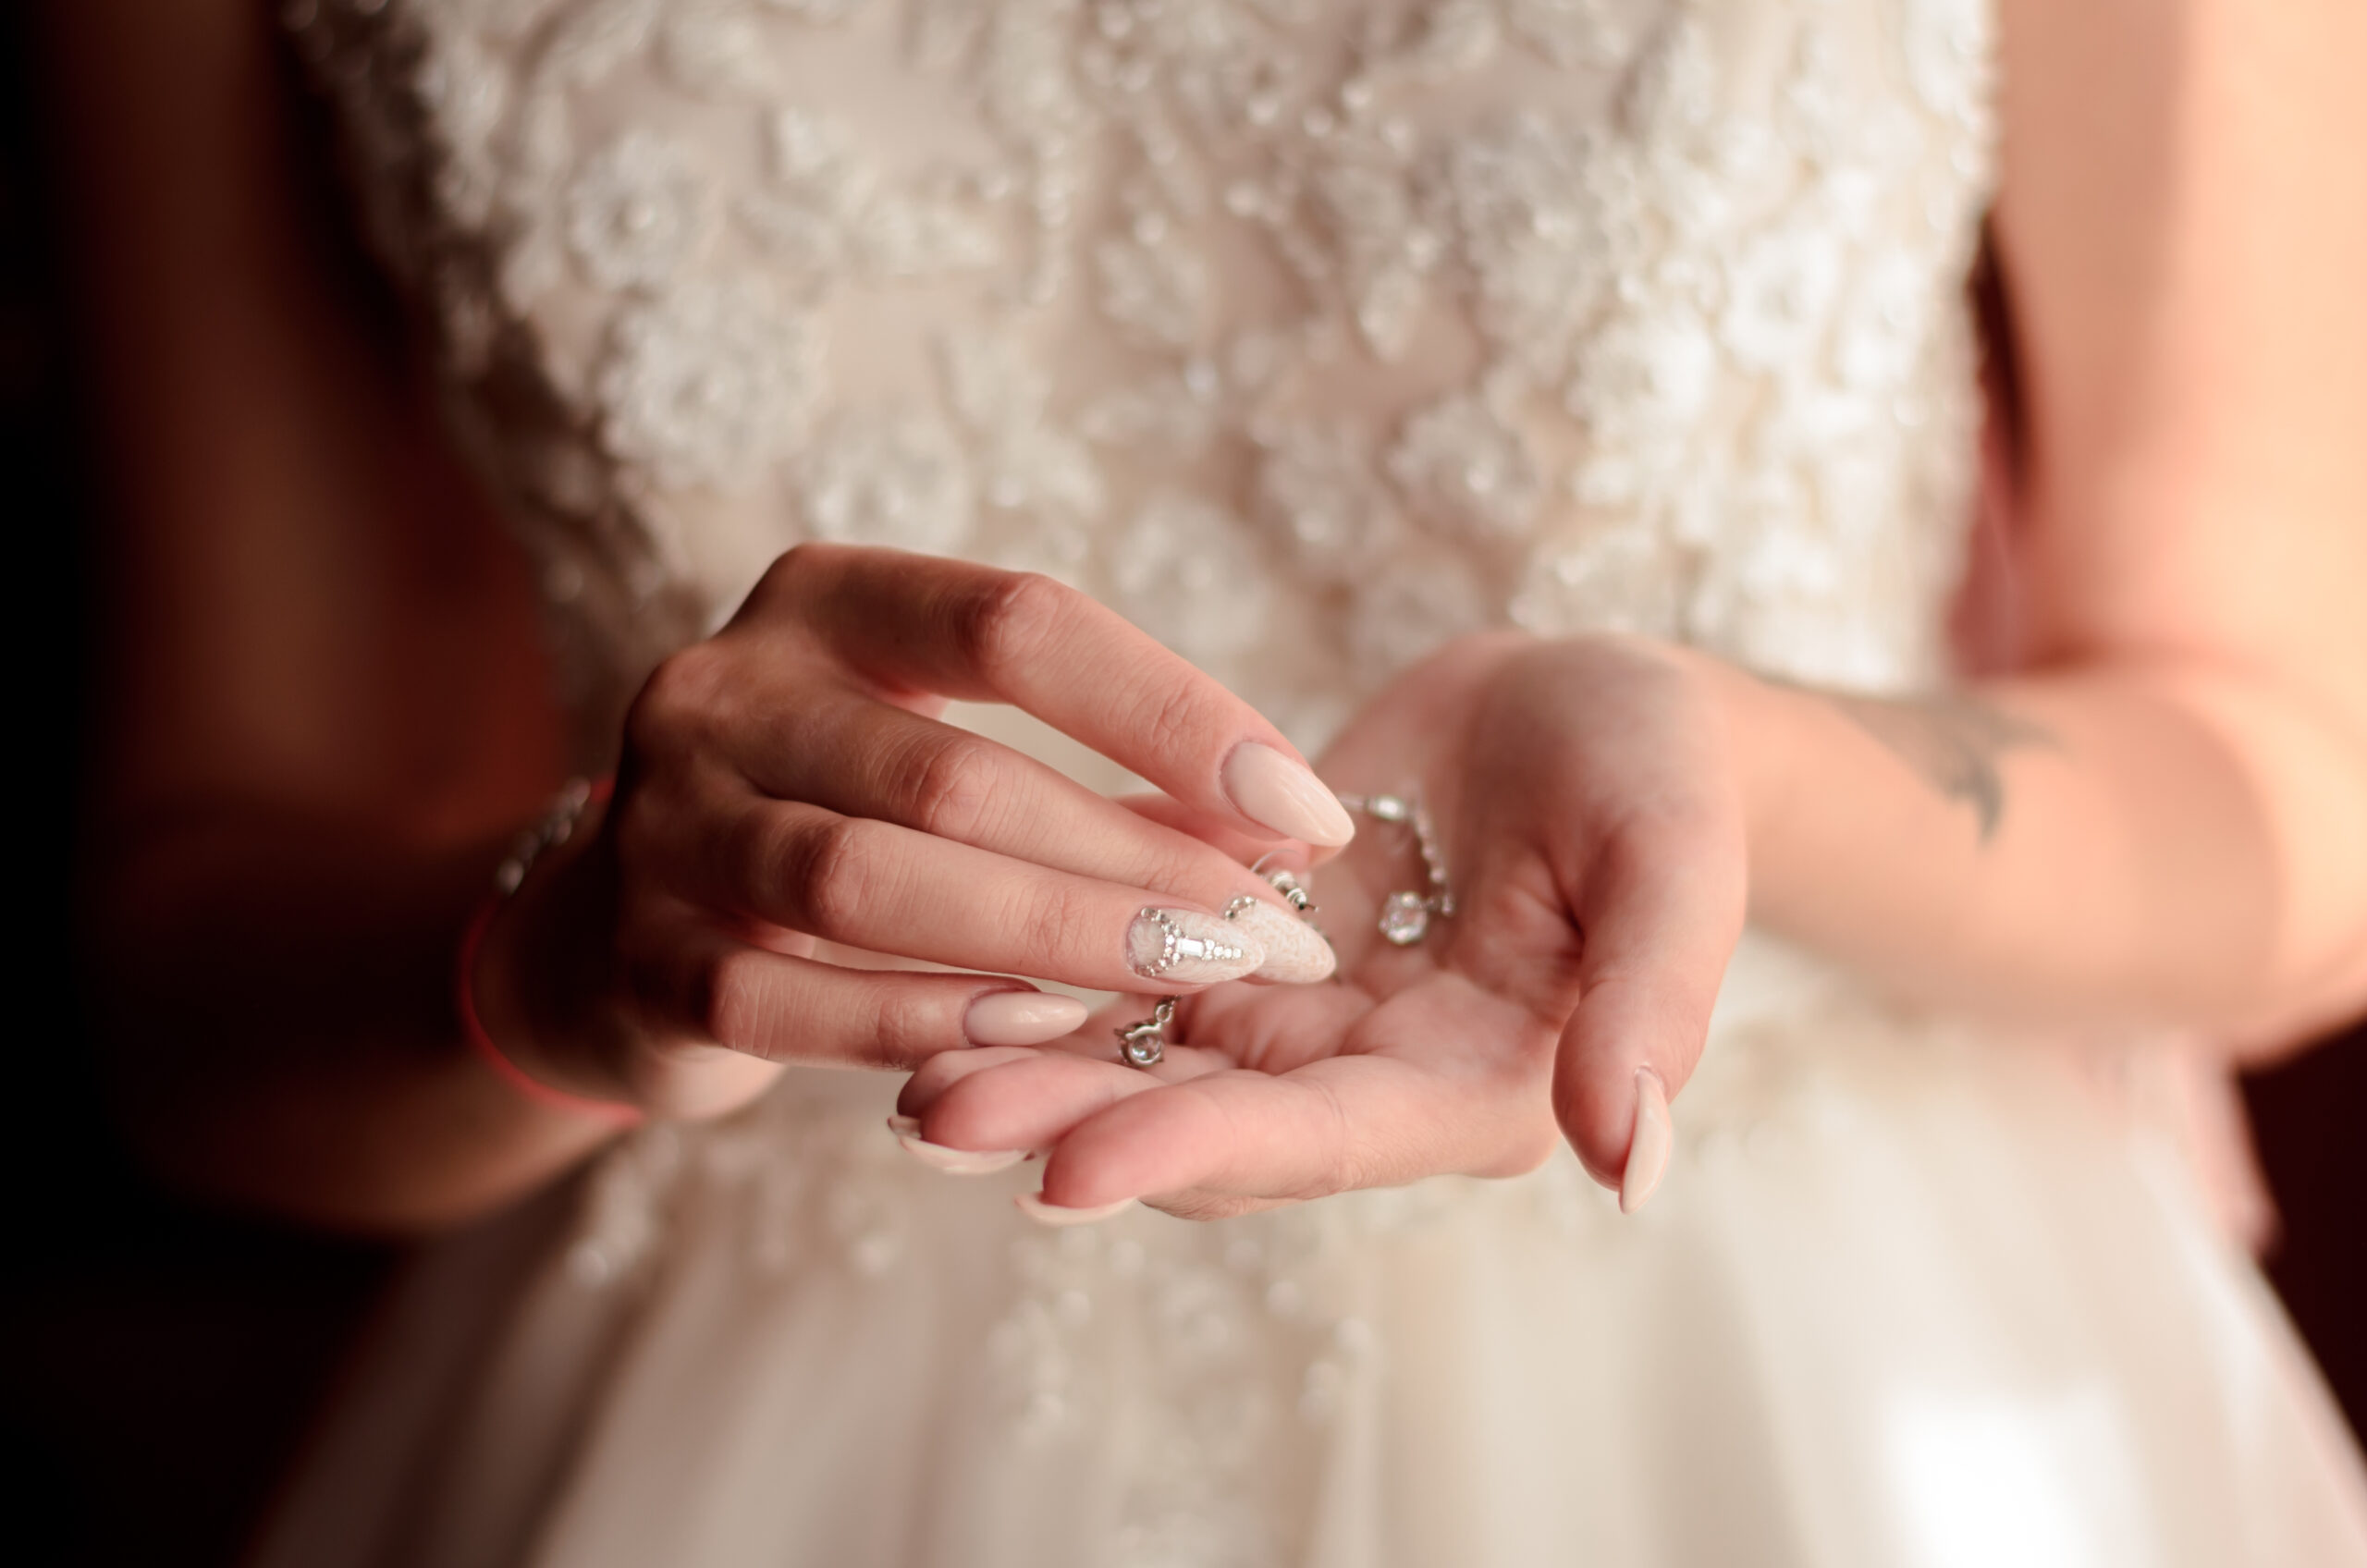 paznokcie ślubne nude z ozdobnymi cyrkoniami na dłoniach panny młodej